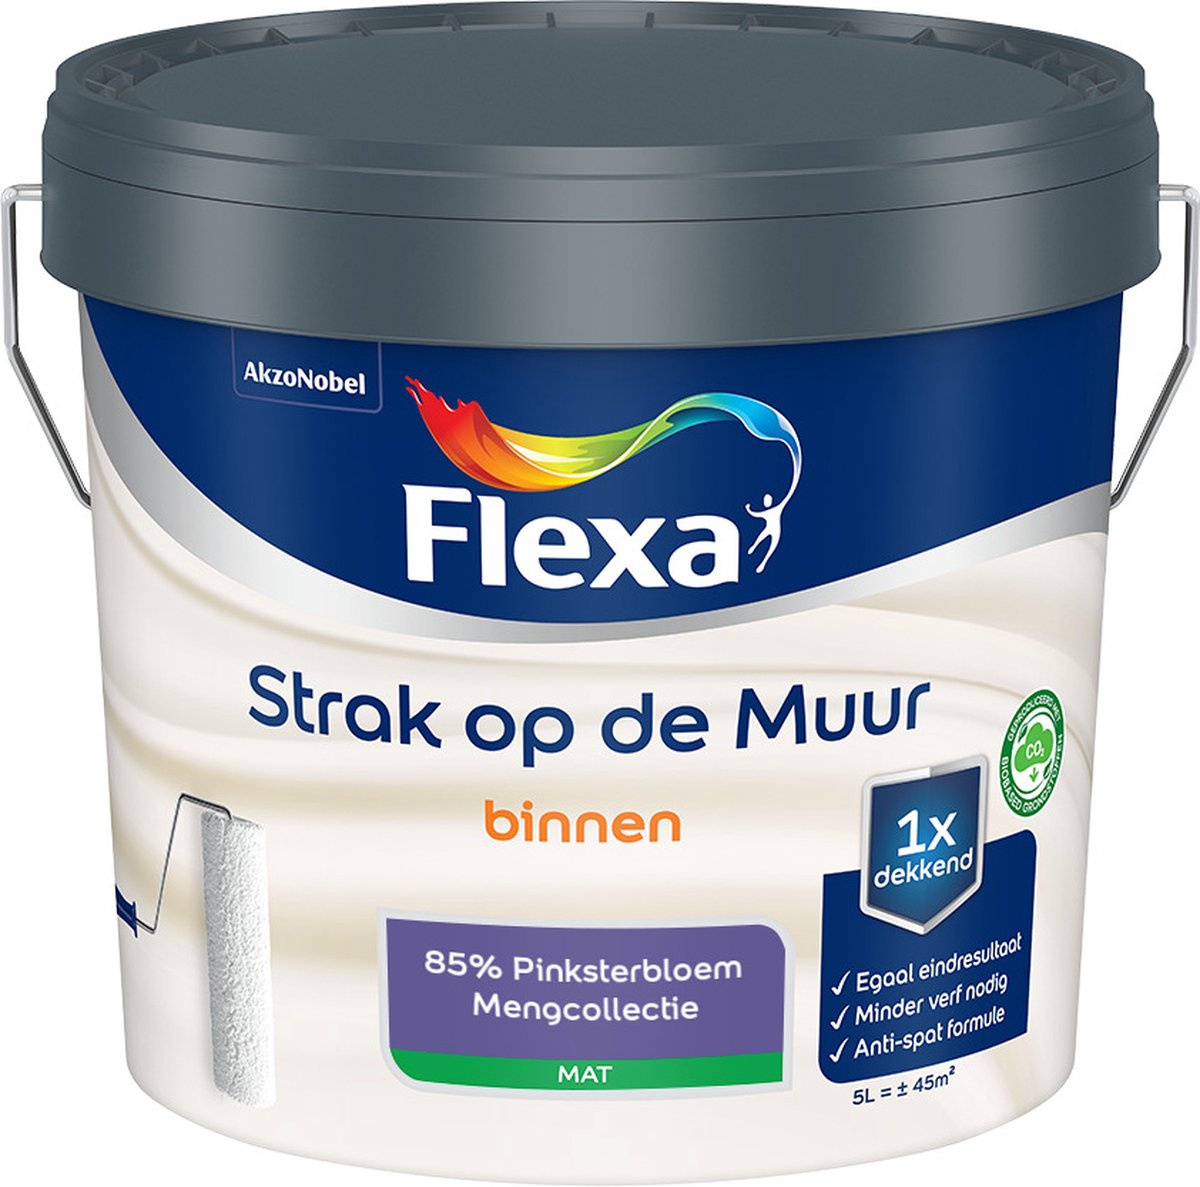 Flexa Strak op de muur - Muurverf - Mengcollectie - 85% Pinksterbloem - 5 Liter